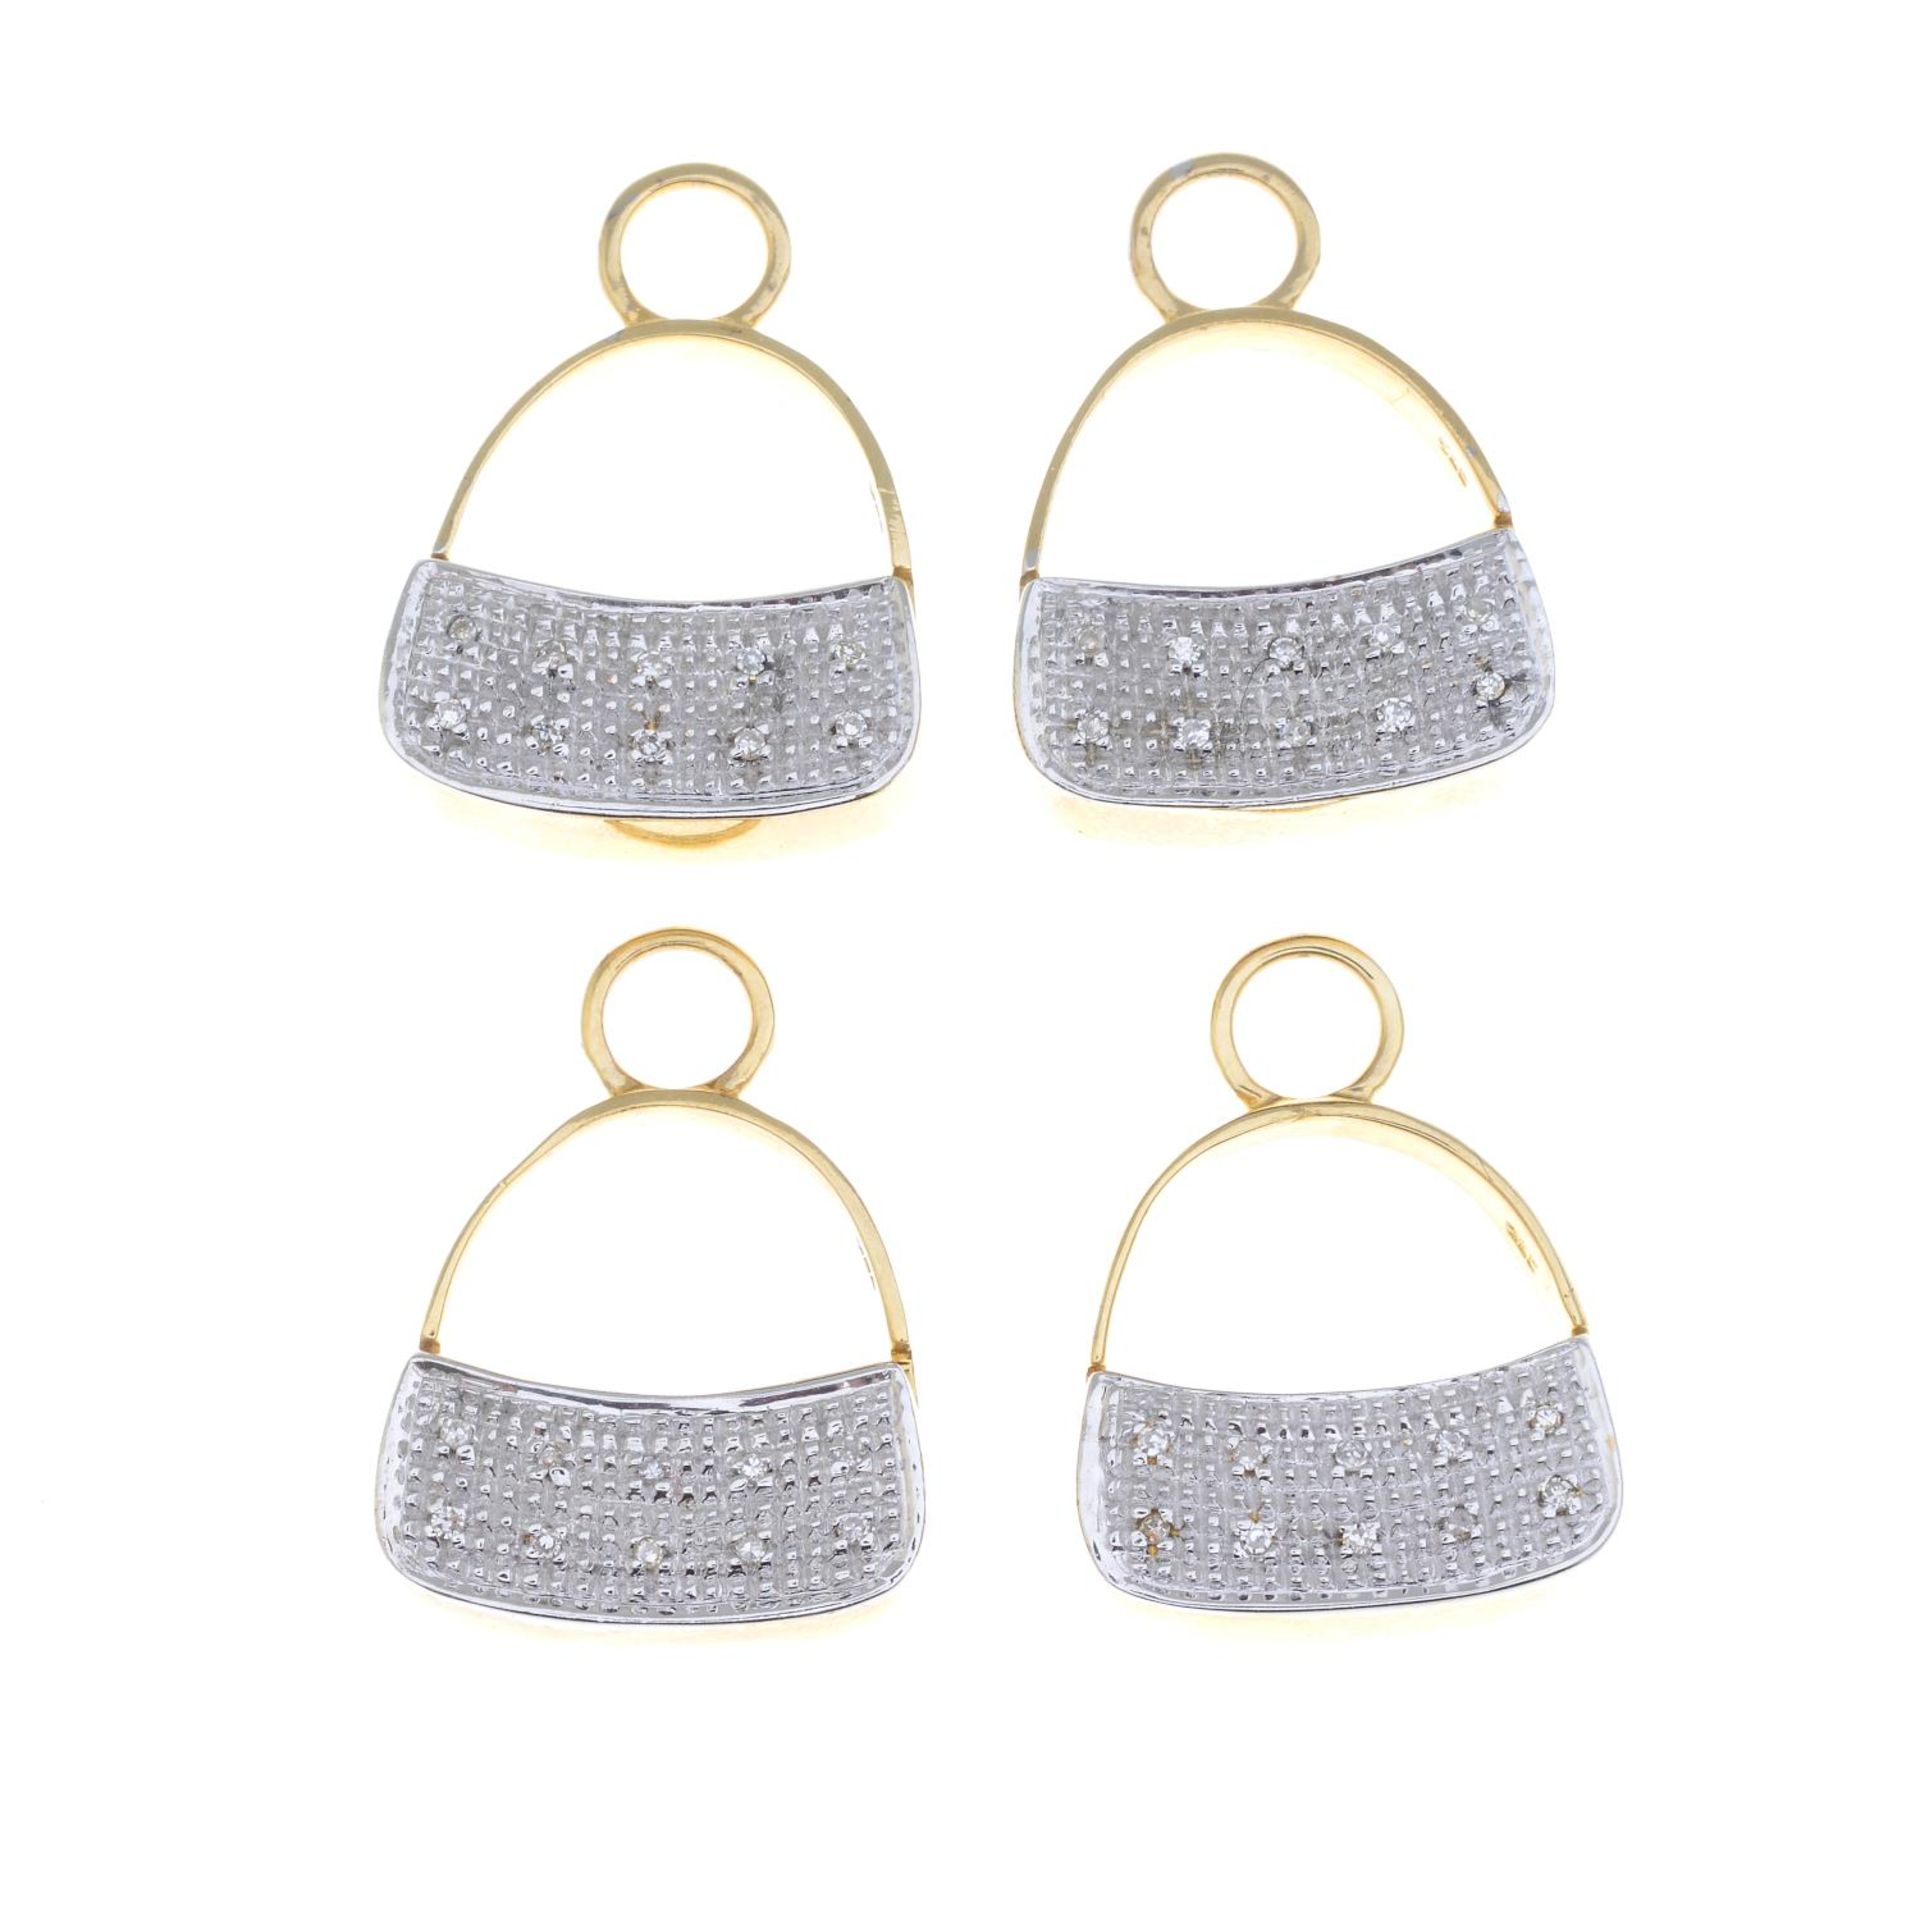 Four diamond accent handbag charms.